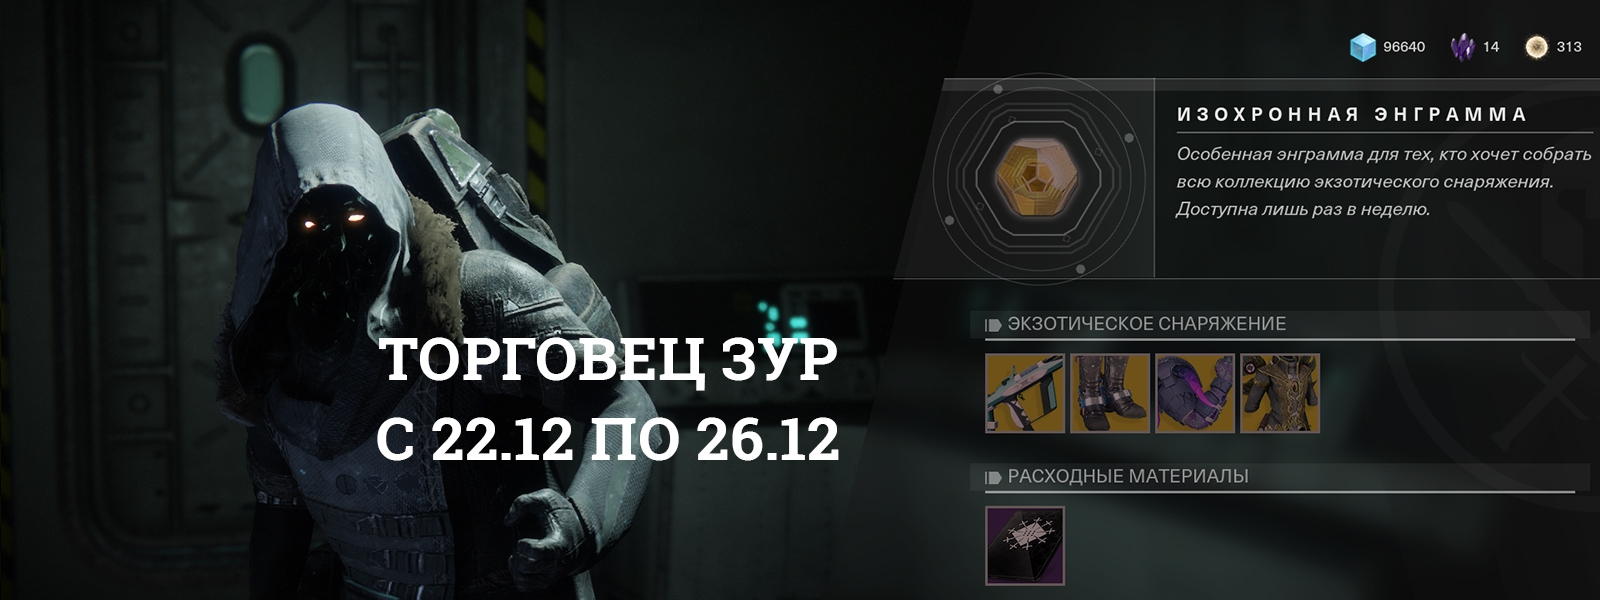 Destiny 2: Зур и его товары с 22 по 26 декабря